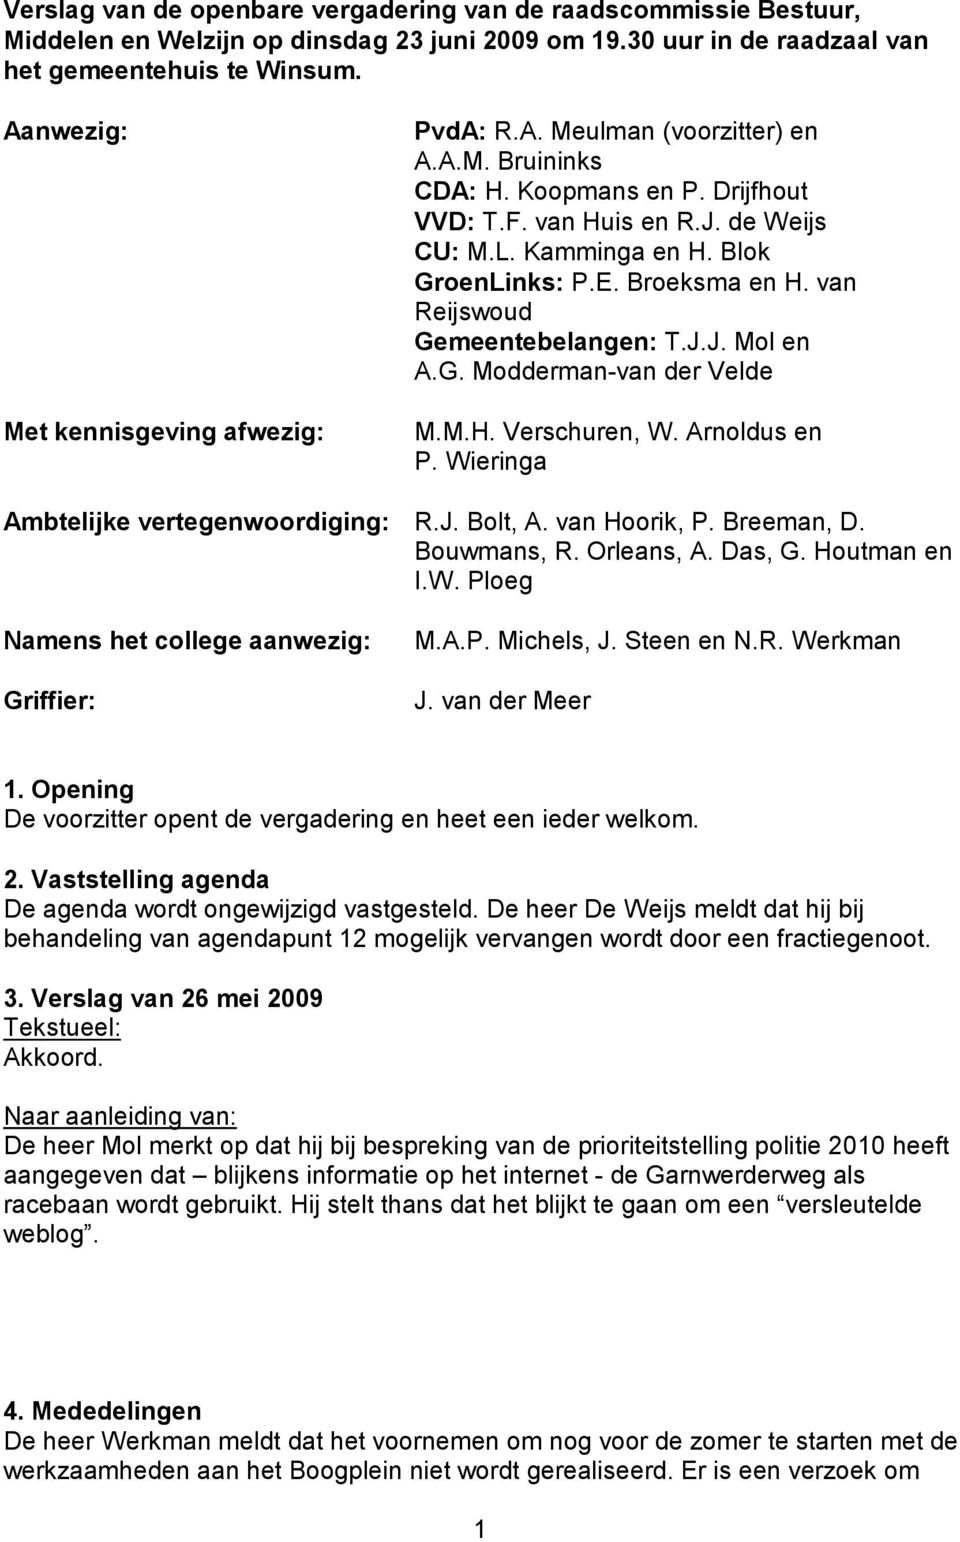 E. Broeksma en H. van Reijswoud Gemeentebelangen: T.J.J. Mol en A.G. Modderman-van der Velde M.M.H. Verschuren, W. Arnoldus en P. Wieringa Ambtelijke vertegenwoordiging: R.J. Bolt, A. van Hoorik, P.